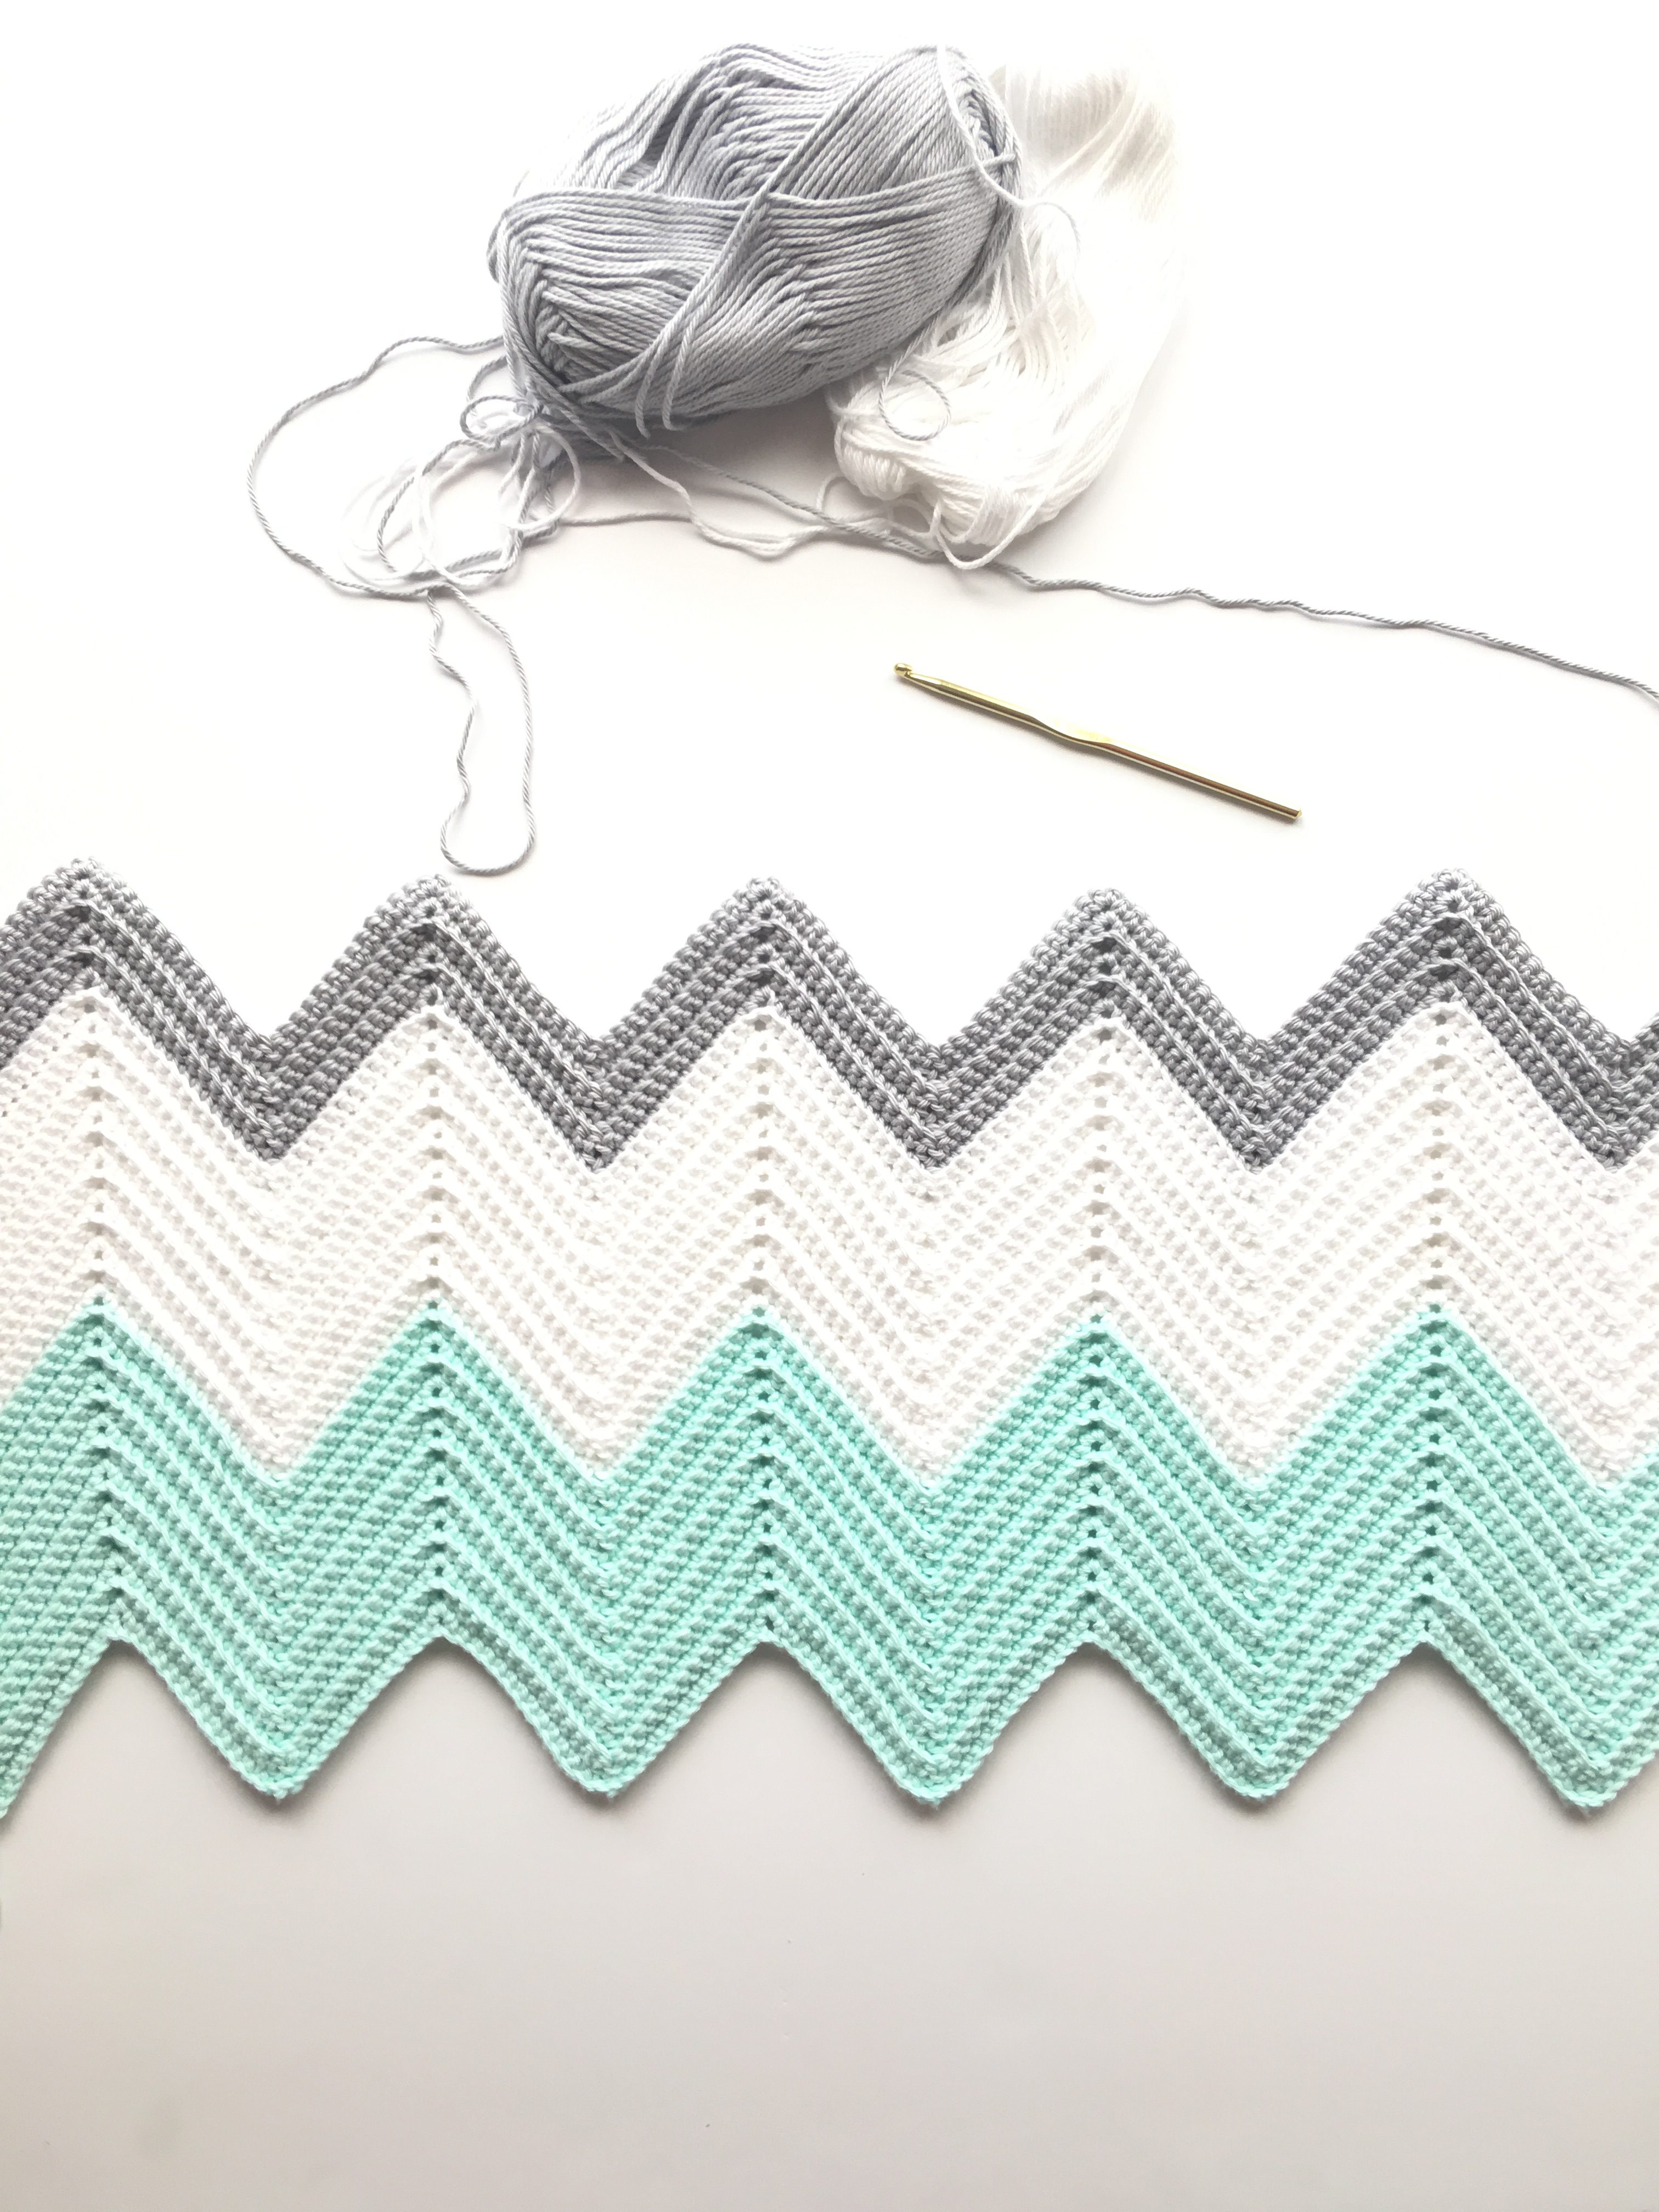 crochet pattern drawing